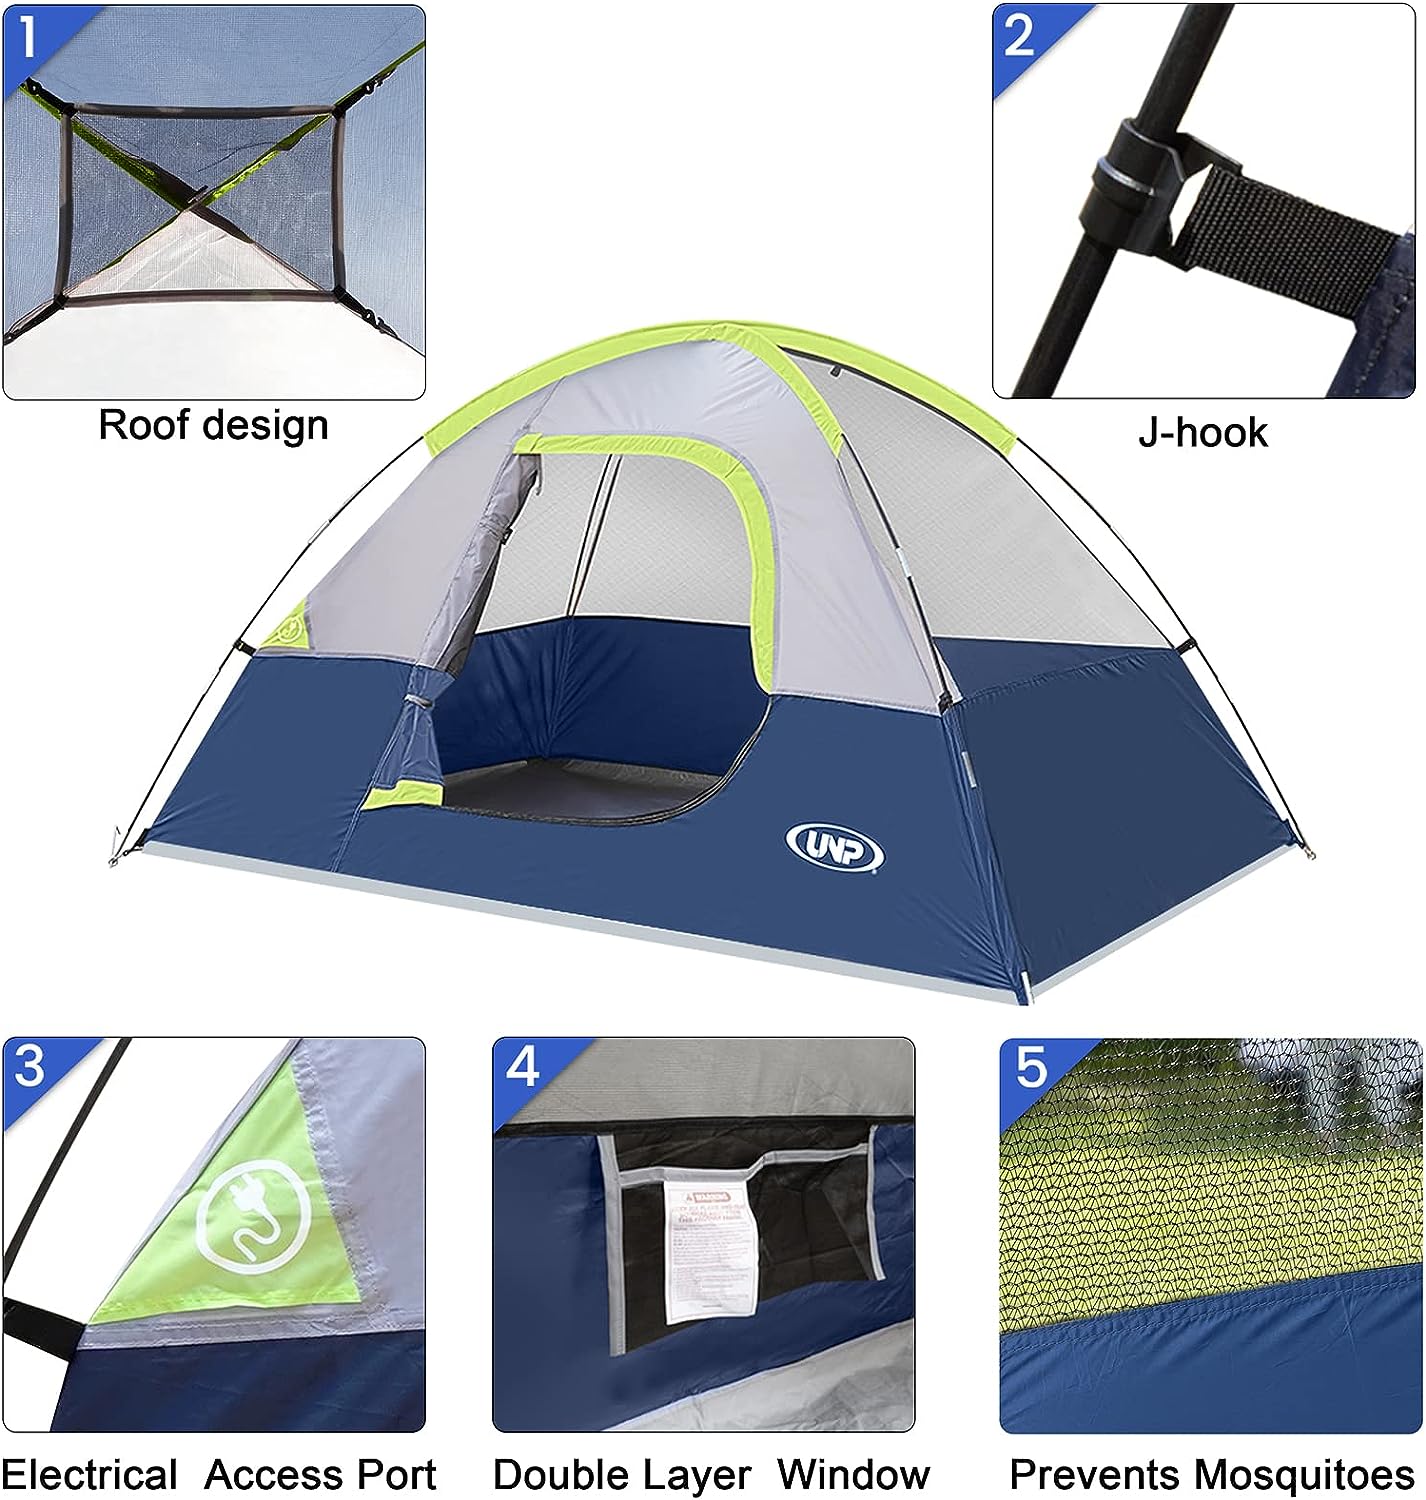 Unp Dome Tent Features